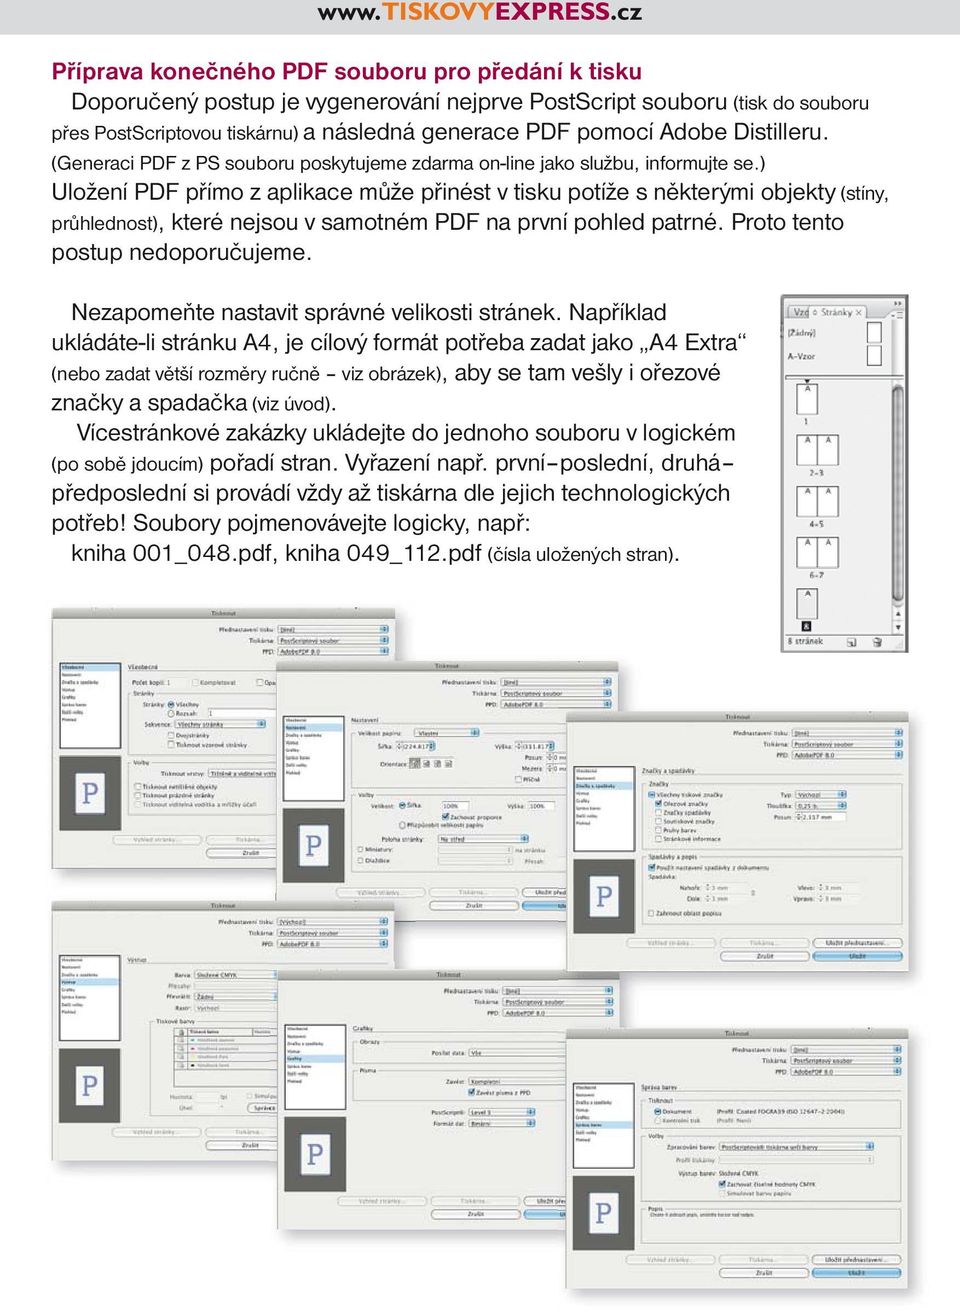 ) Uložení PDF přímo z aplikace může přinést v tisku potíže s některými objekty (stíny, průhlednost), které nejsou v samotném PDF na první pohled patrné. Proto tento postup nedoporučujeme.